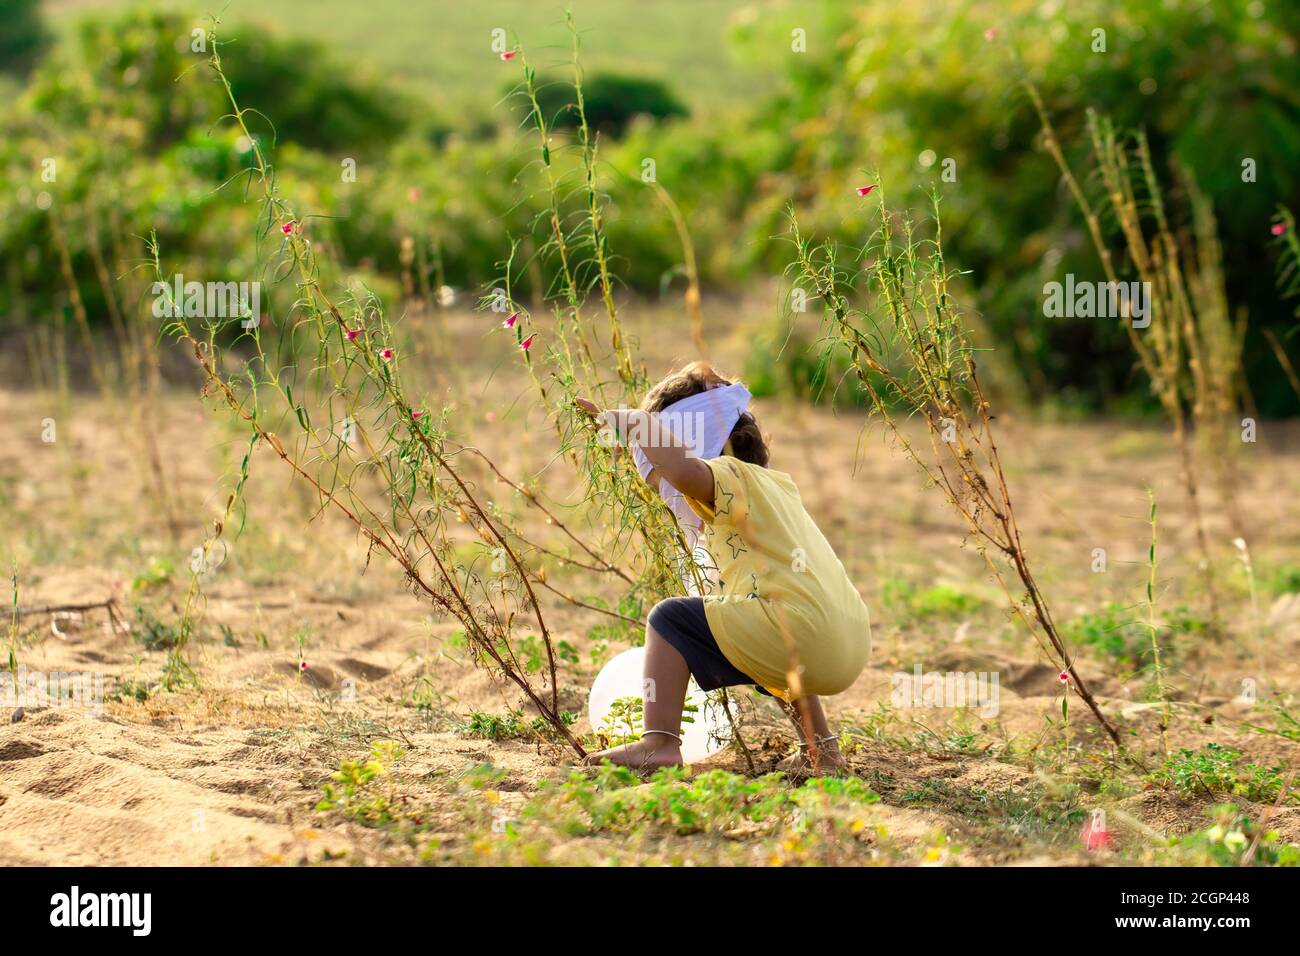 Un enfant indien essayant de prendre un ballon blanc soufflé dans les buissons par le vent, pour éviter le virus corona, un petit enfant asiatique jouant dans le jardin avec Banque D'Images